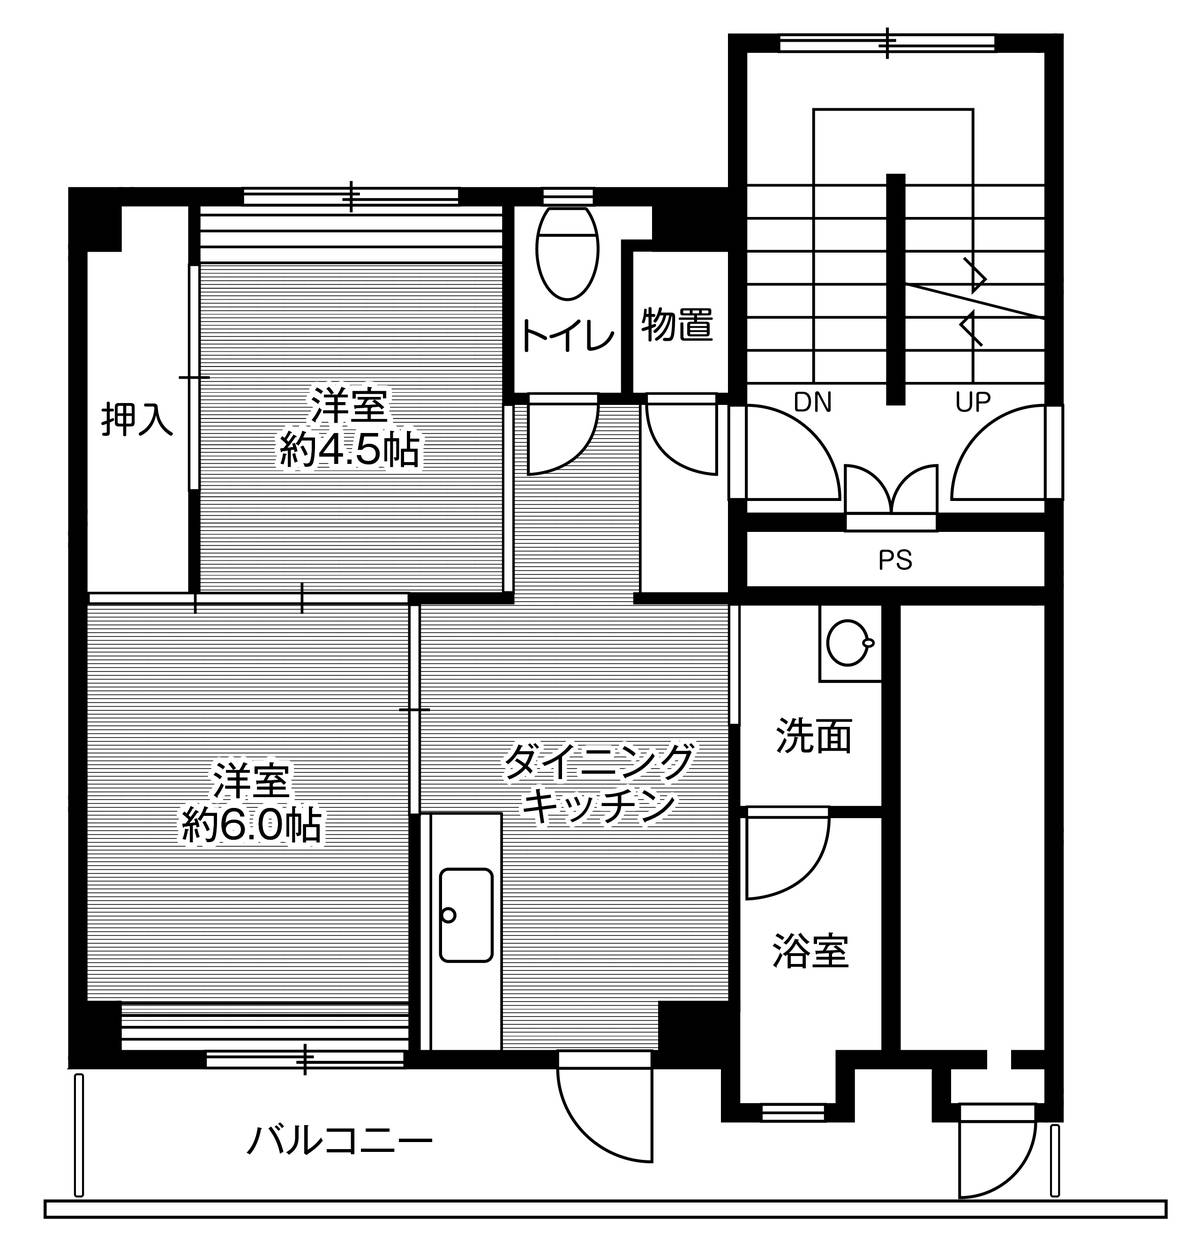 2DK floorplan of Village House Koyama in Tottori-shi